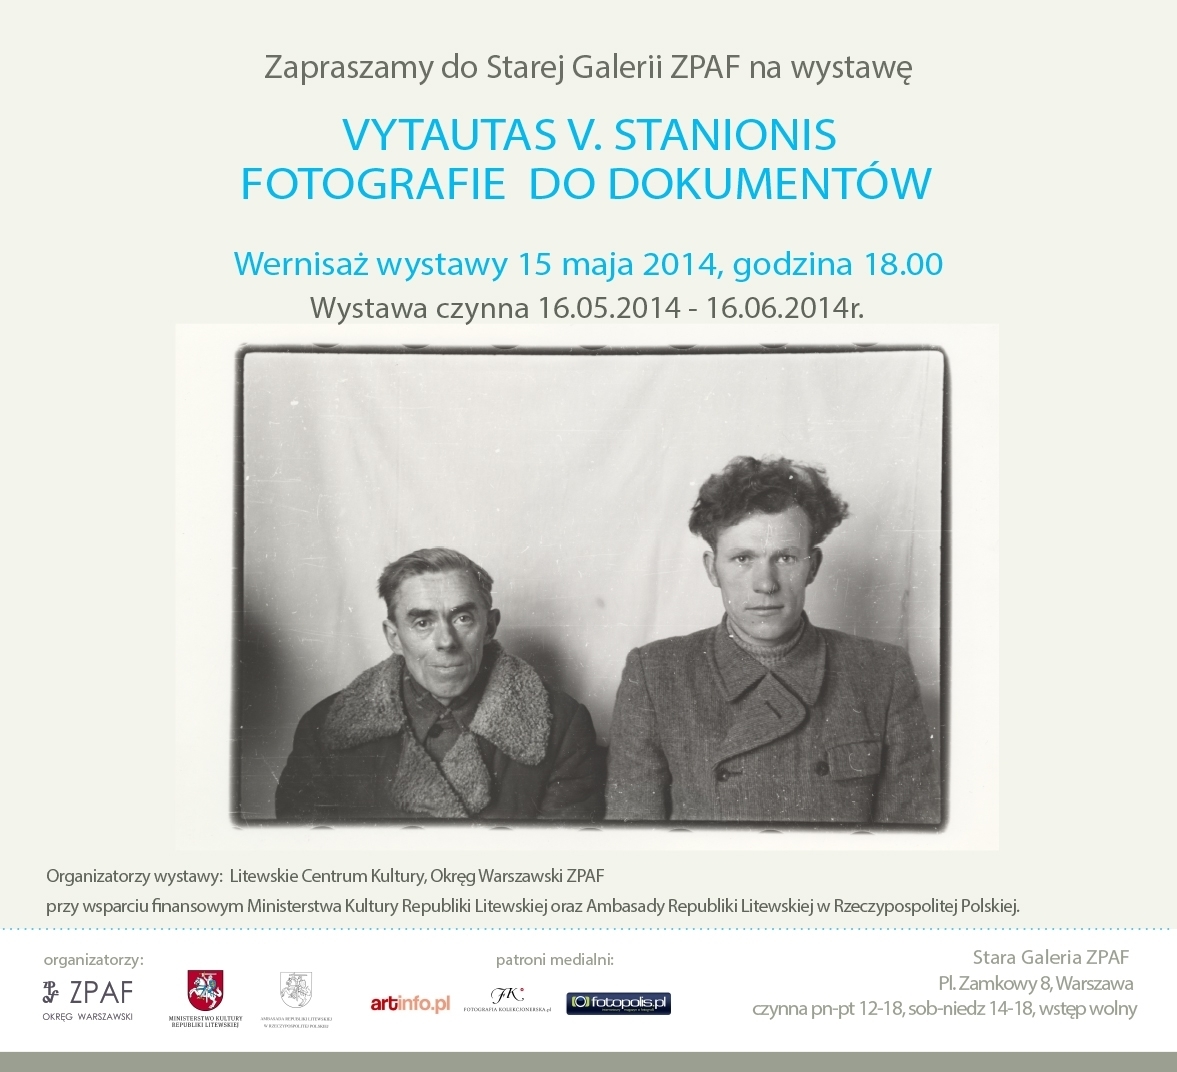 15 травня: відкриття фотовиставки литовського митця Витаутаса В. Станіоніса “Фотографії на документи”